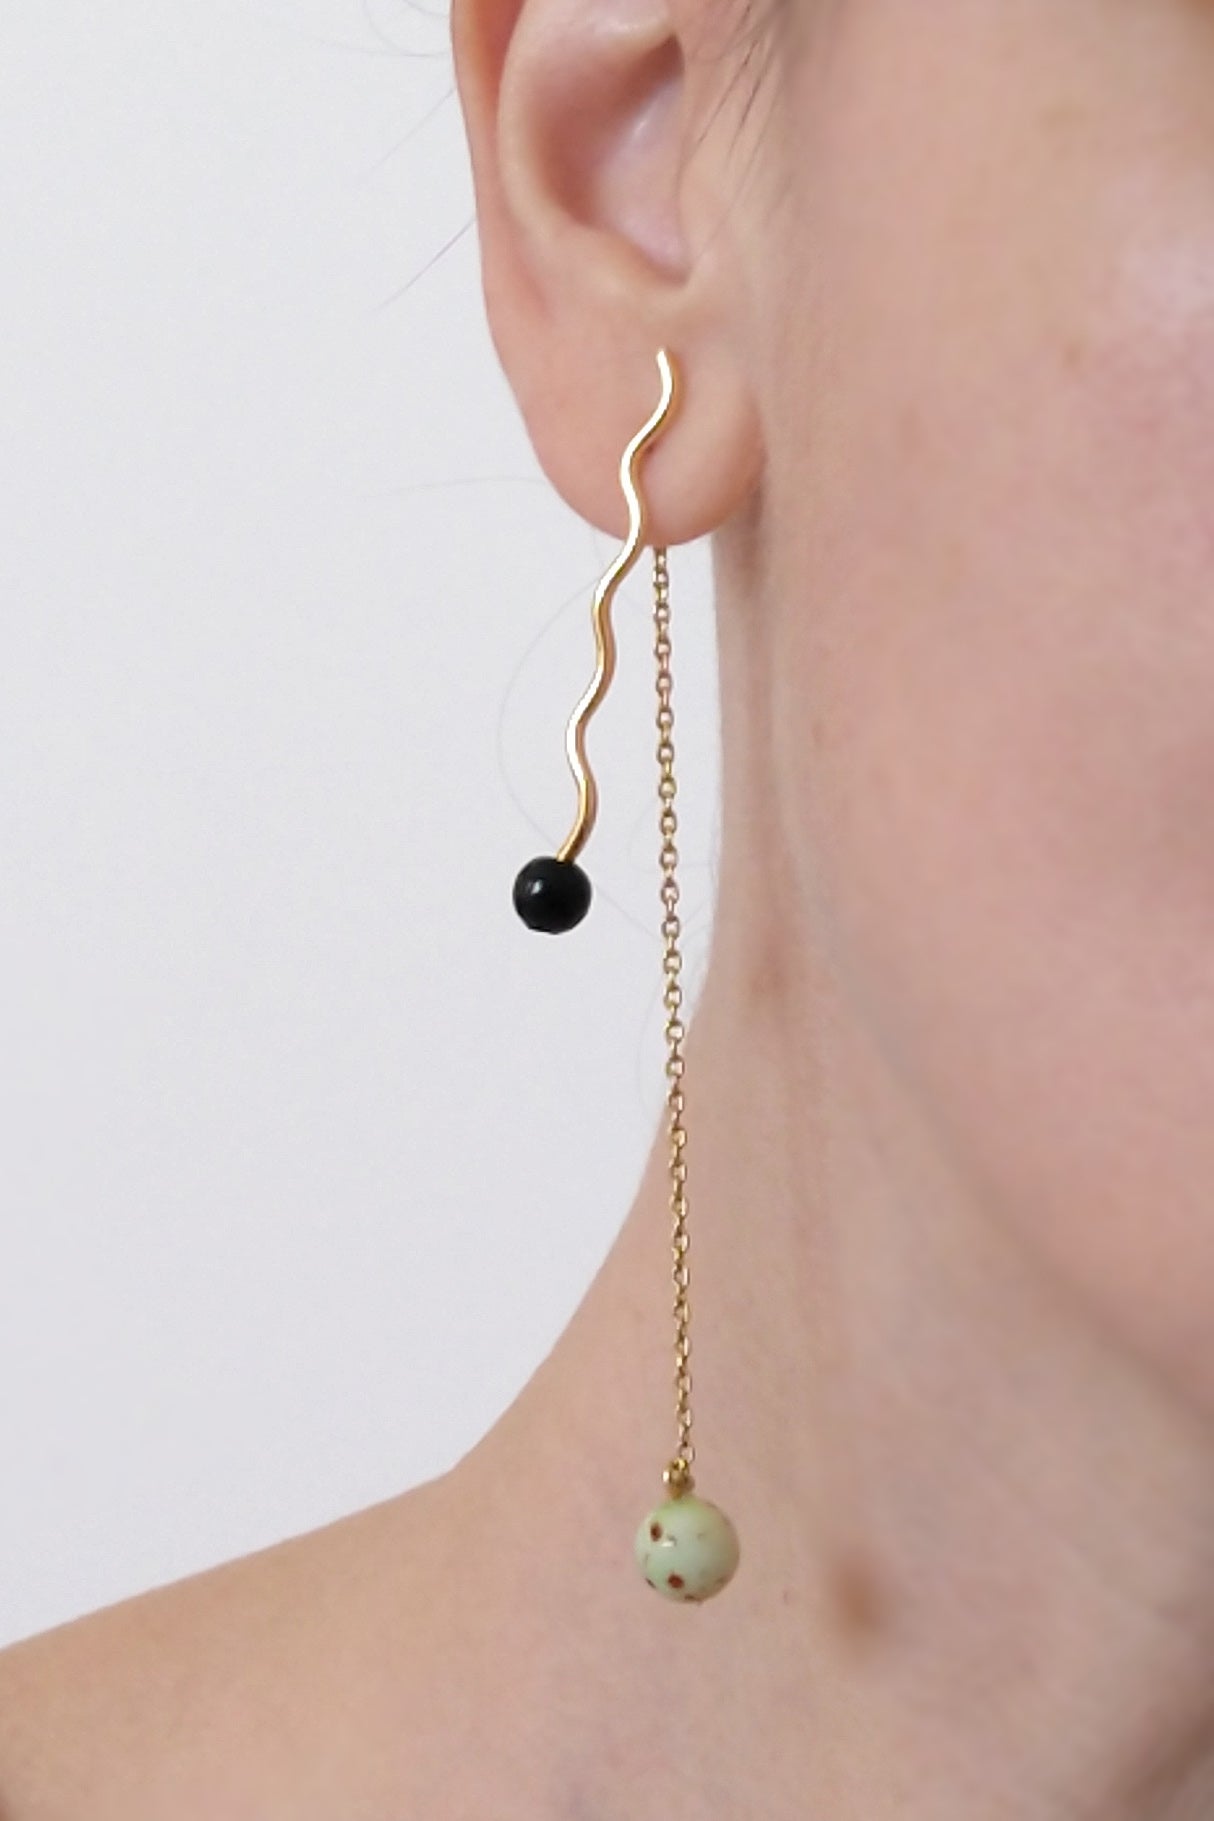 Soft waves earrings